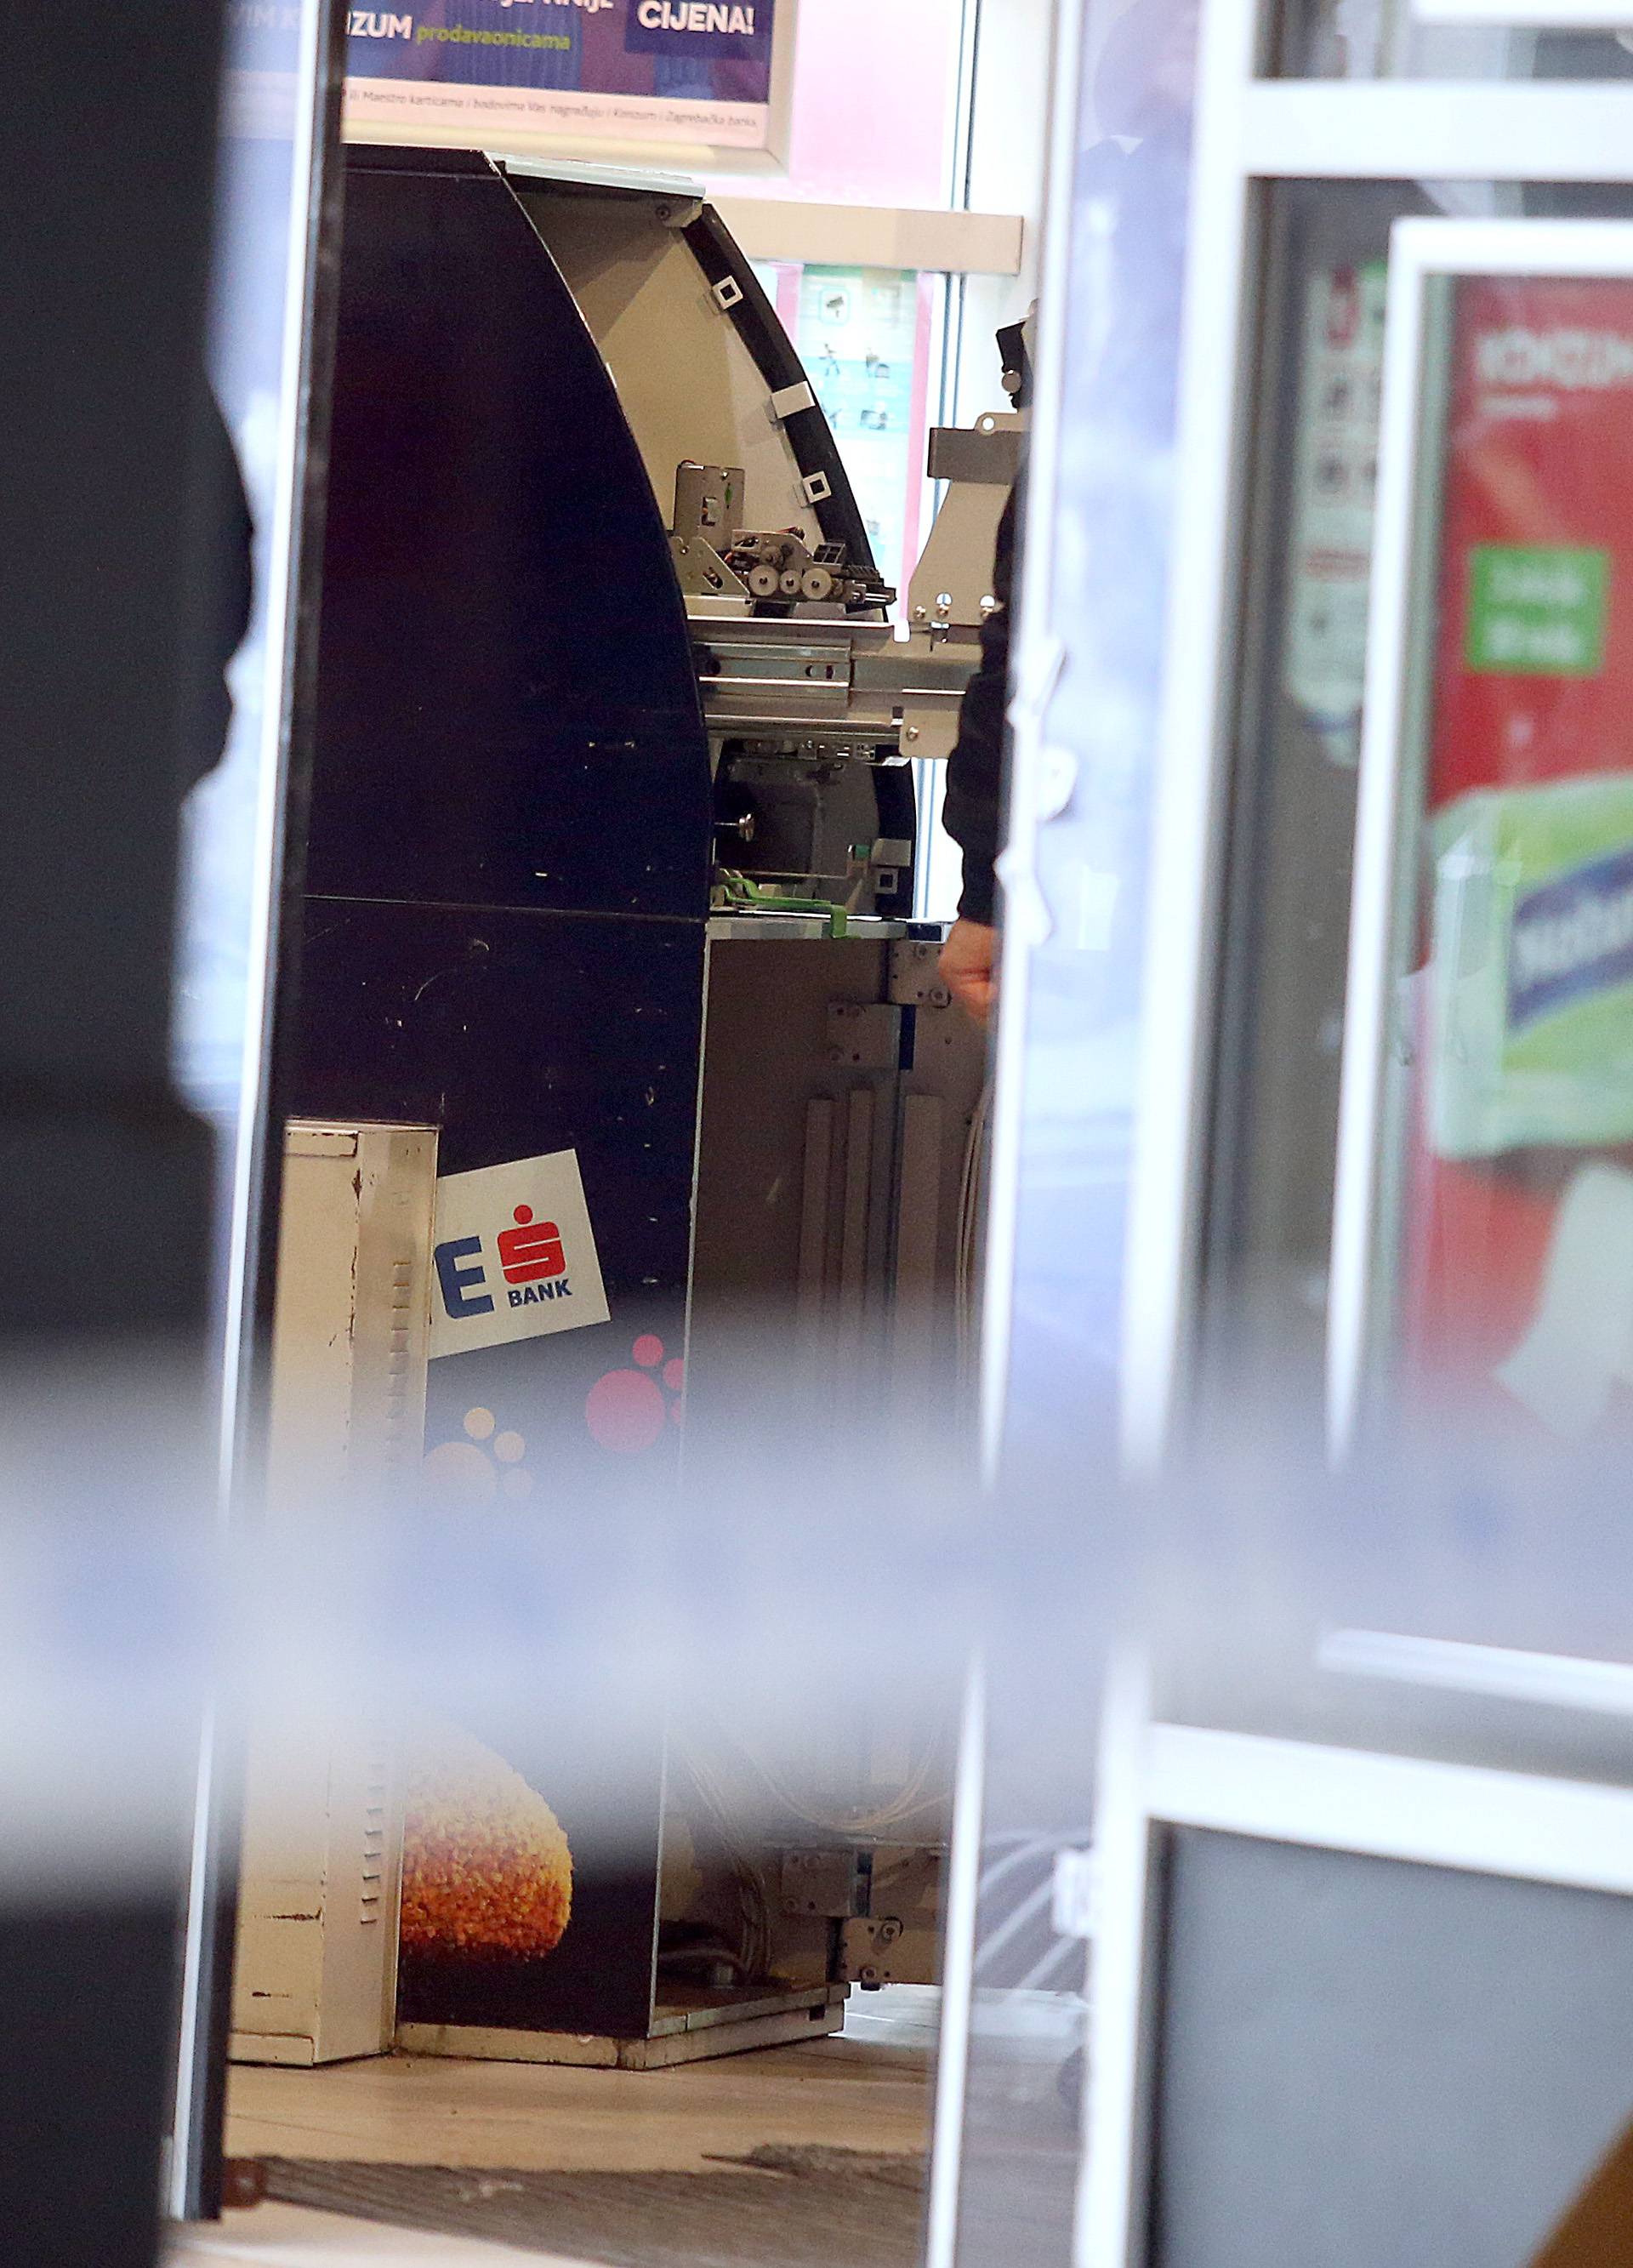 Raznijeli bankomat: Detonacija uništila gotovo cijelu trgovinu!